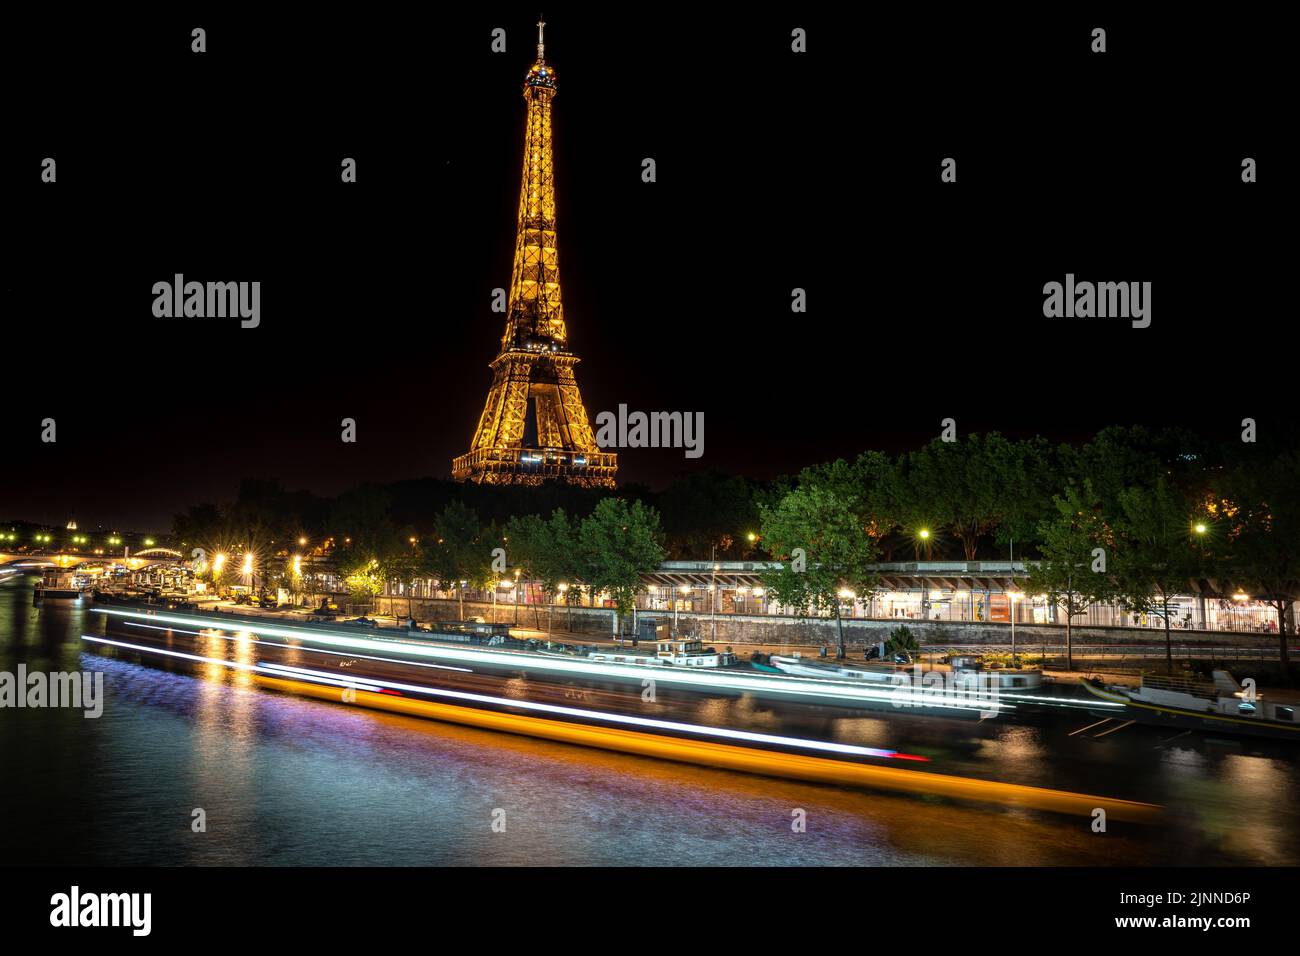 Longue exposition de la Seine la nuit avec un sentier lumineux d'un navire, Paris, France Banque D'Images